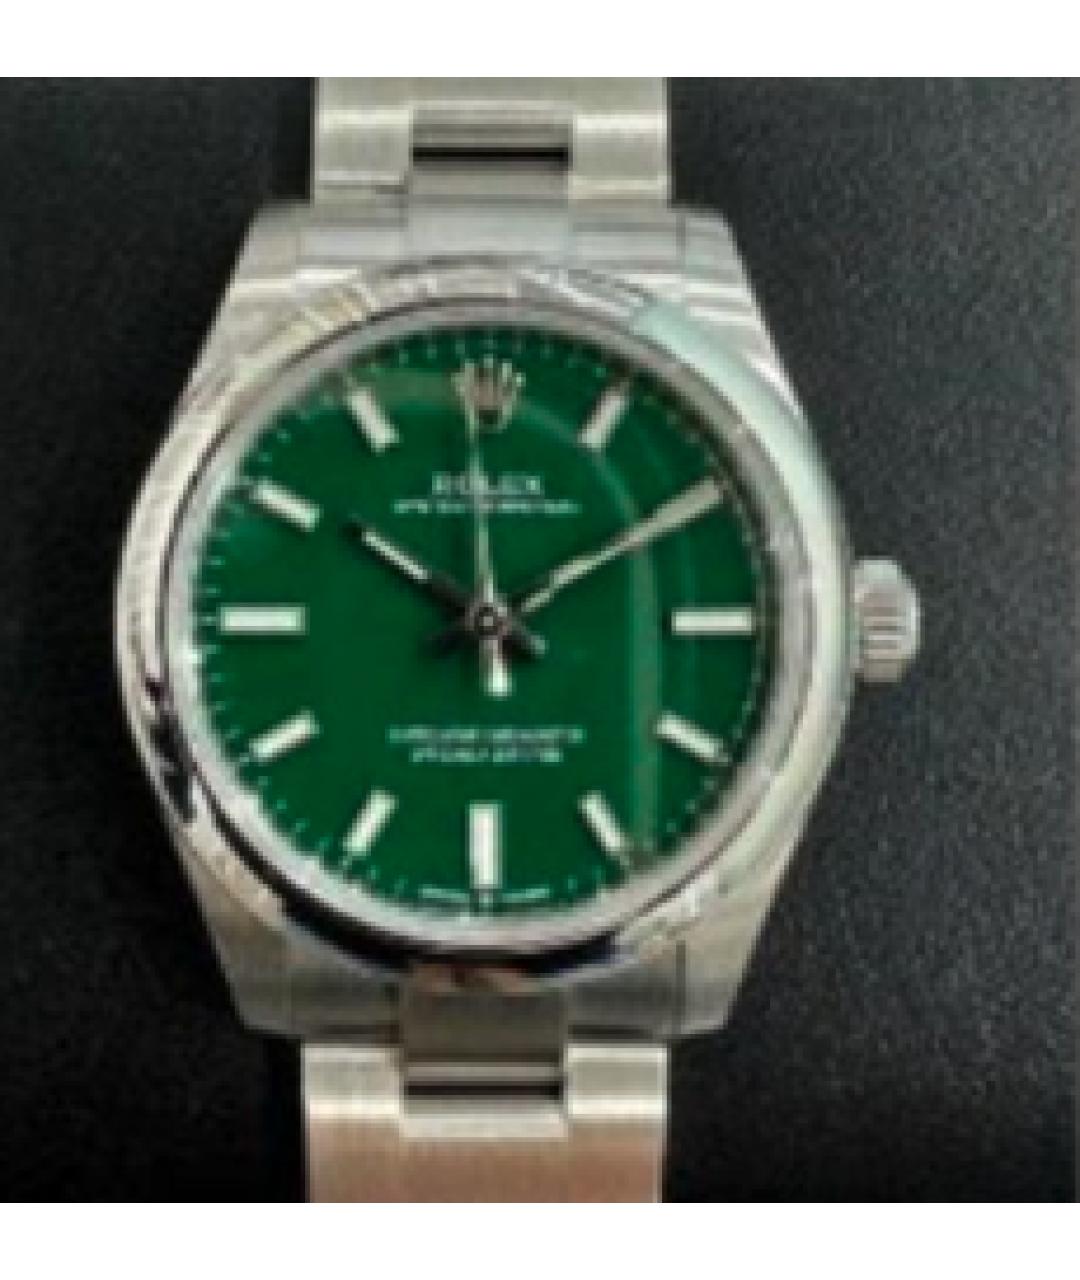 ROLEX Зеленые часы, фото 2